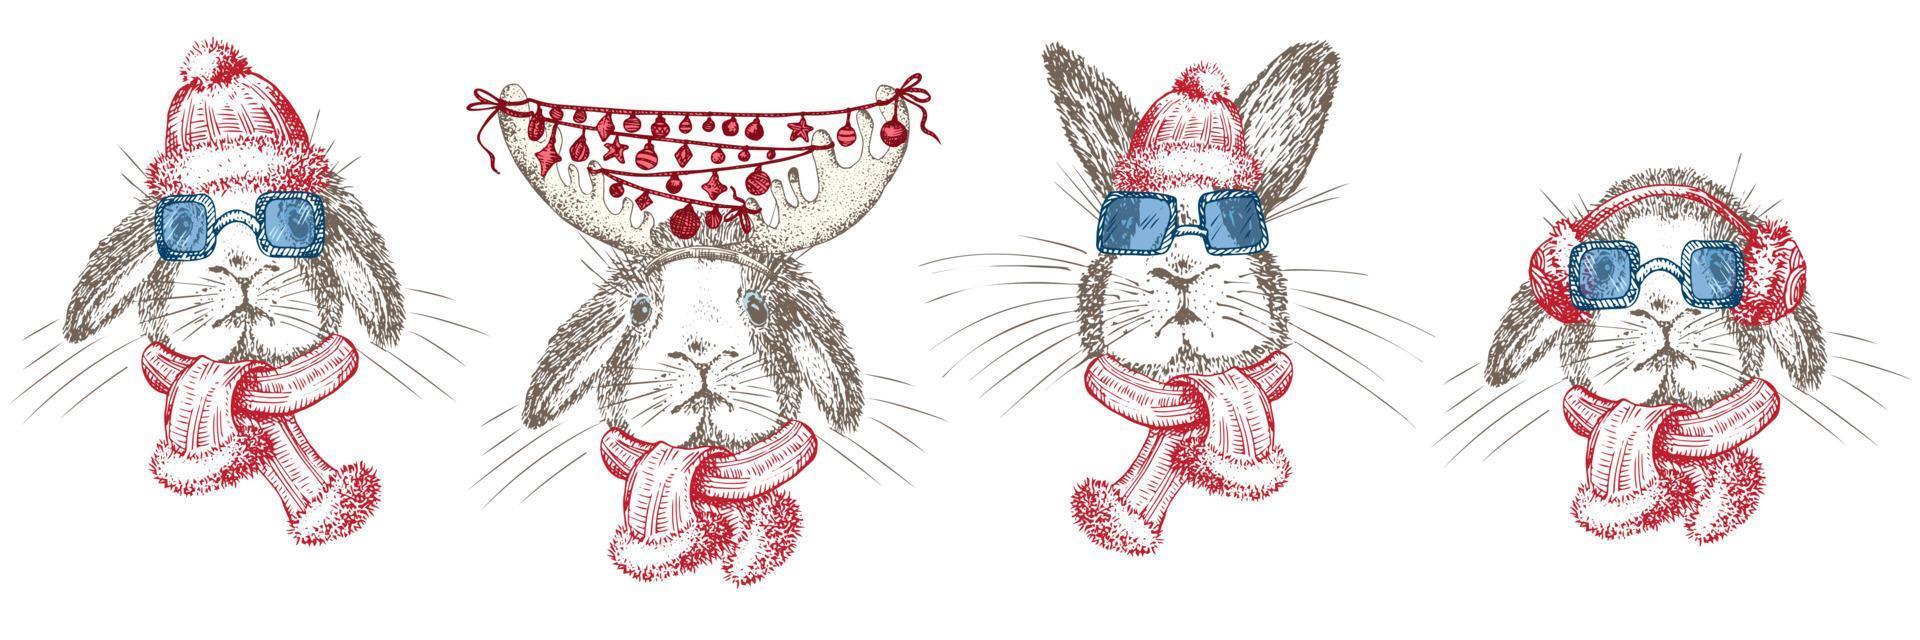 coniglio disegnato a mano in sciarpa invernale rossa, cuffie, occhiali da sole. coniglietto simbolo capodanno cinese 2023. natale decort. arte del tatuaggio. disegno in stile incisione schizzo in bianco e nero. vettore